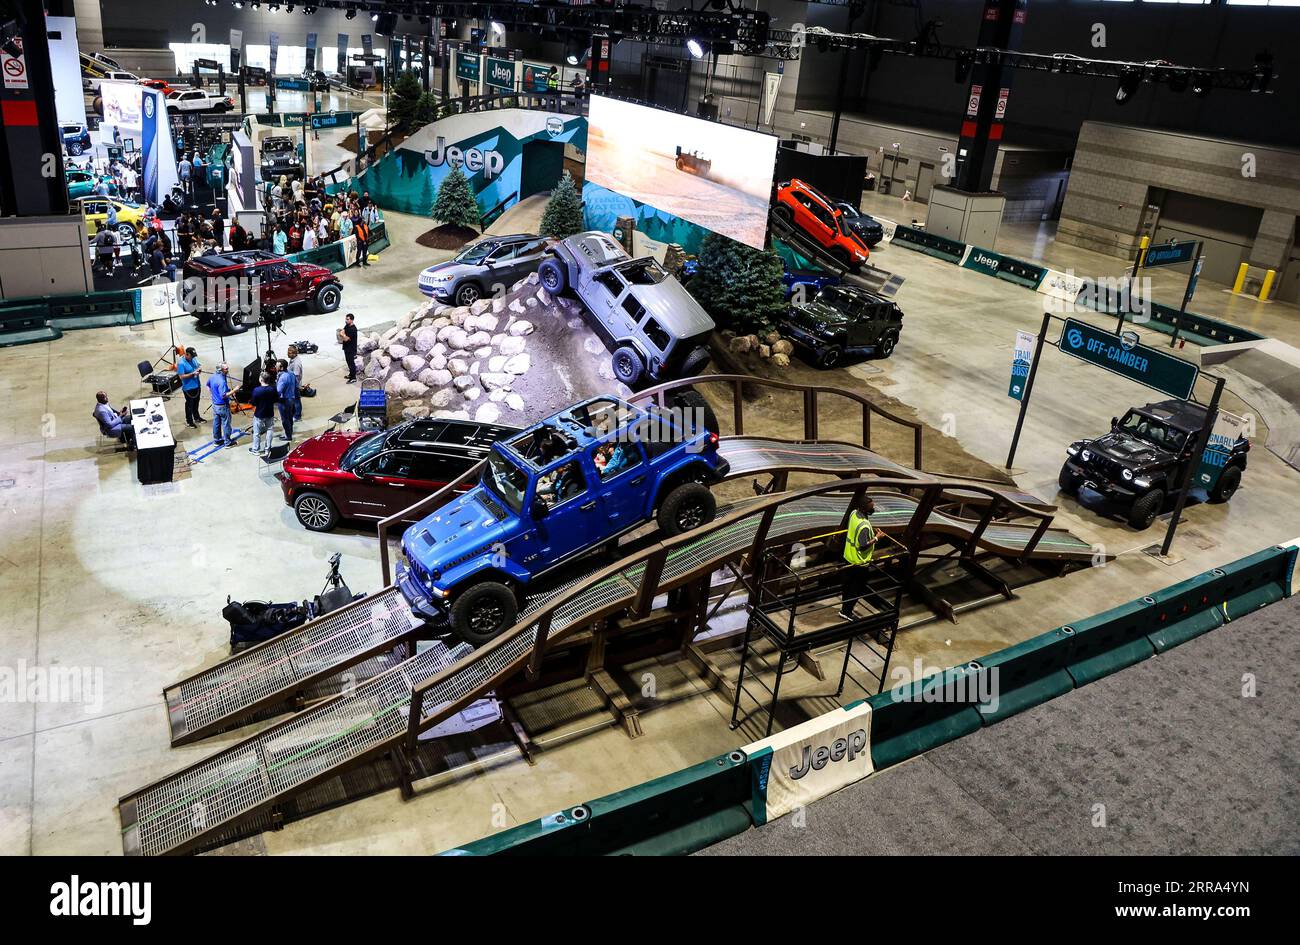 News Bilder des Tages 210716 -- CHICAGO, 16 luglio 2021 -- vari modelli di Jeeps mostrano le loro capacità fuoristrada sul percorso ad ostacoli al Chicago Auto Show 2021 tenutosi al McCormick Place di Chicago, negli Stati Uniti, il 15 luglio 2021. Il Chicago Auto Show 2021 è iniziato giovedì con oltre 20 produttori di tutto il mondo che hanno presentato i loro ultimi veicoli. Foto di /Xinhua U.S.-CHICAGO-AUTO SHOW JoelxLerner PUBLICATIONxNOTxINxCHN Foto Stock